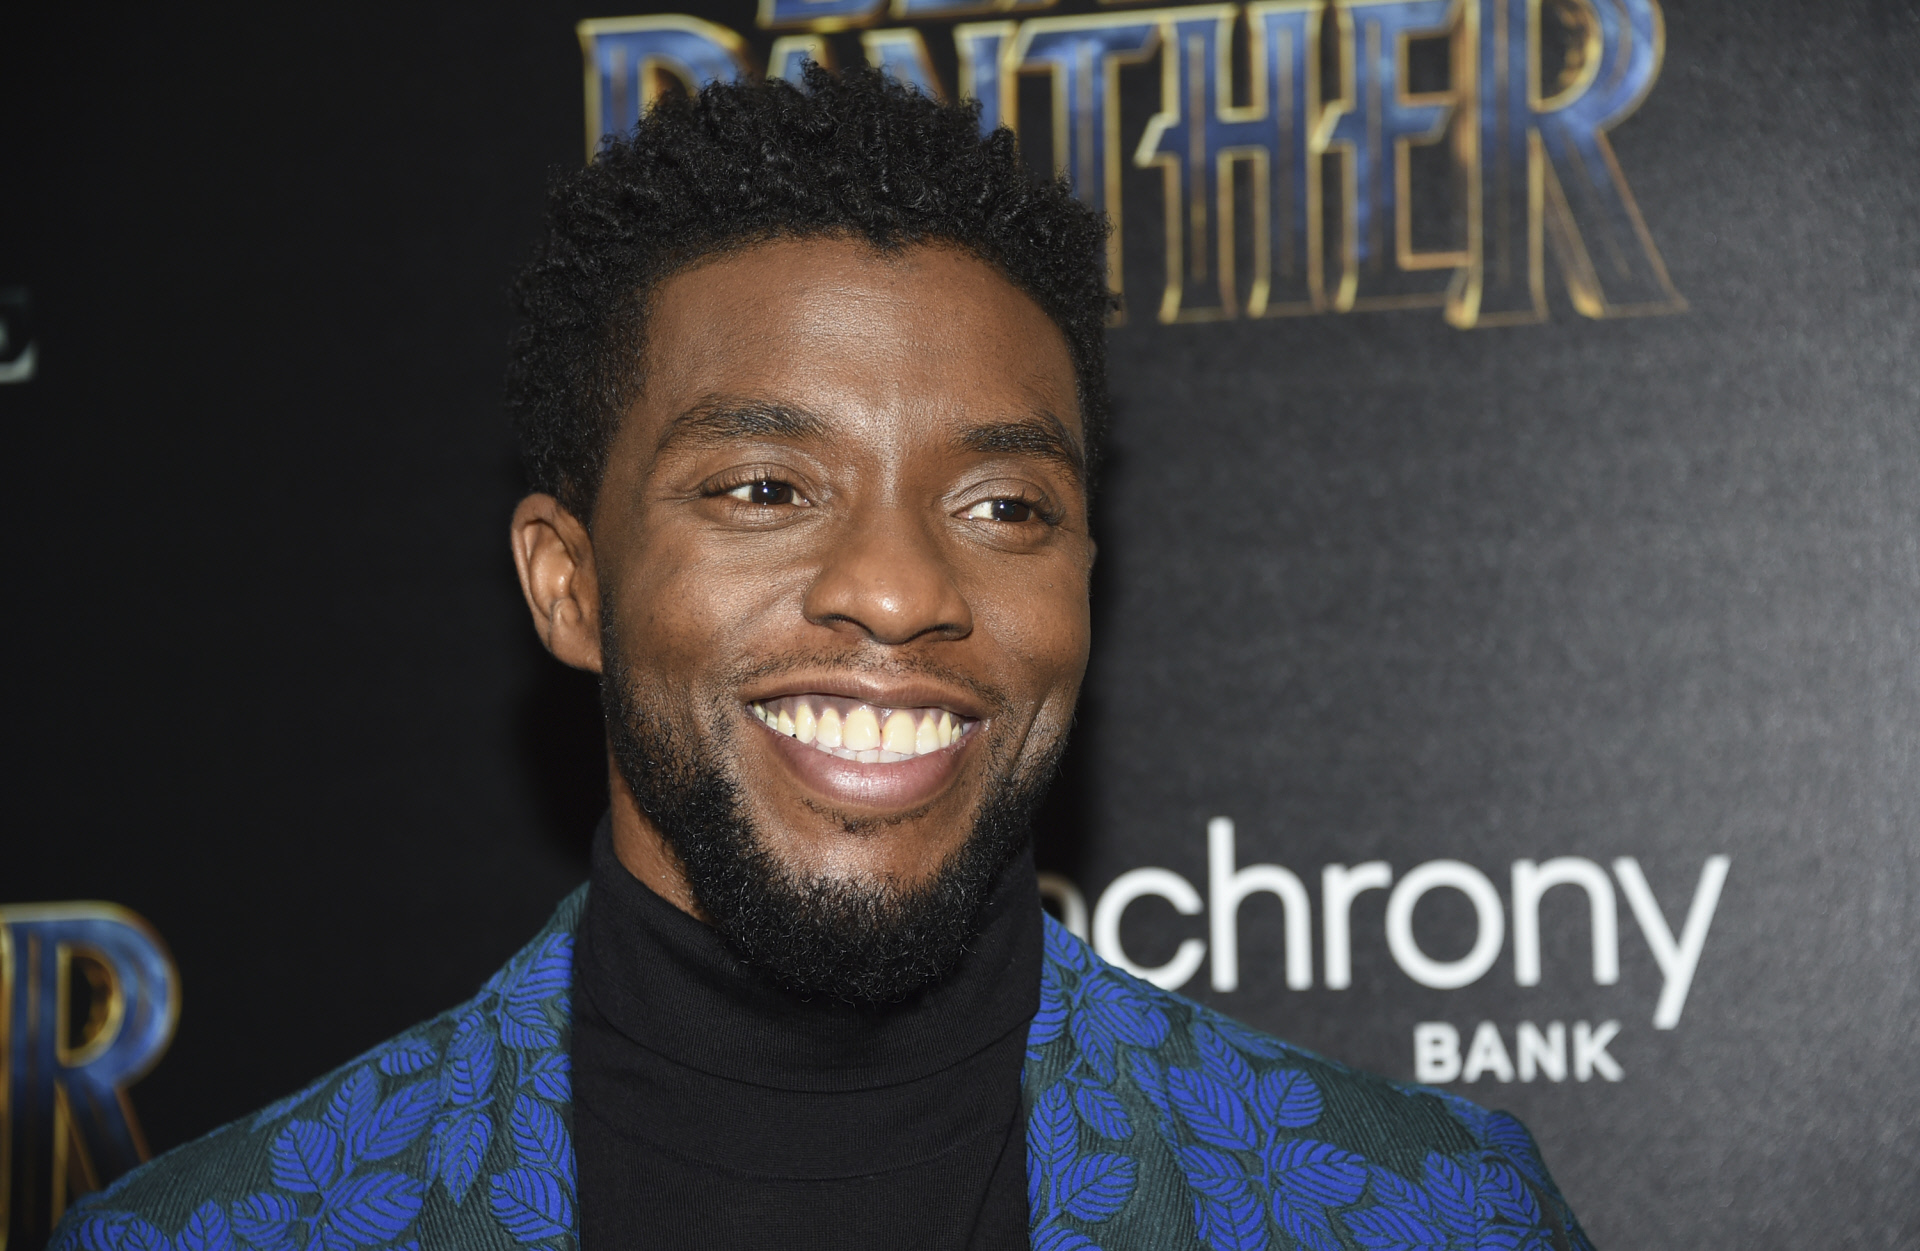 Marvel usa el perfil de Chadwick Boseman para lanzar el tráiler de ‘Black Panther 2’ y se lía